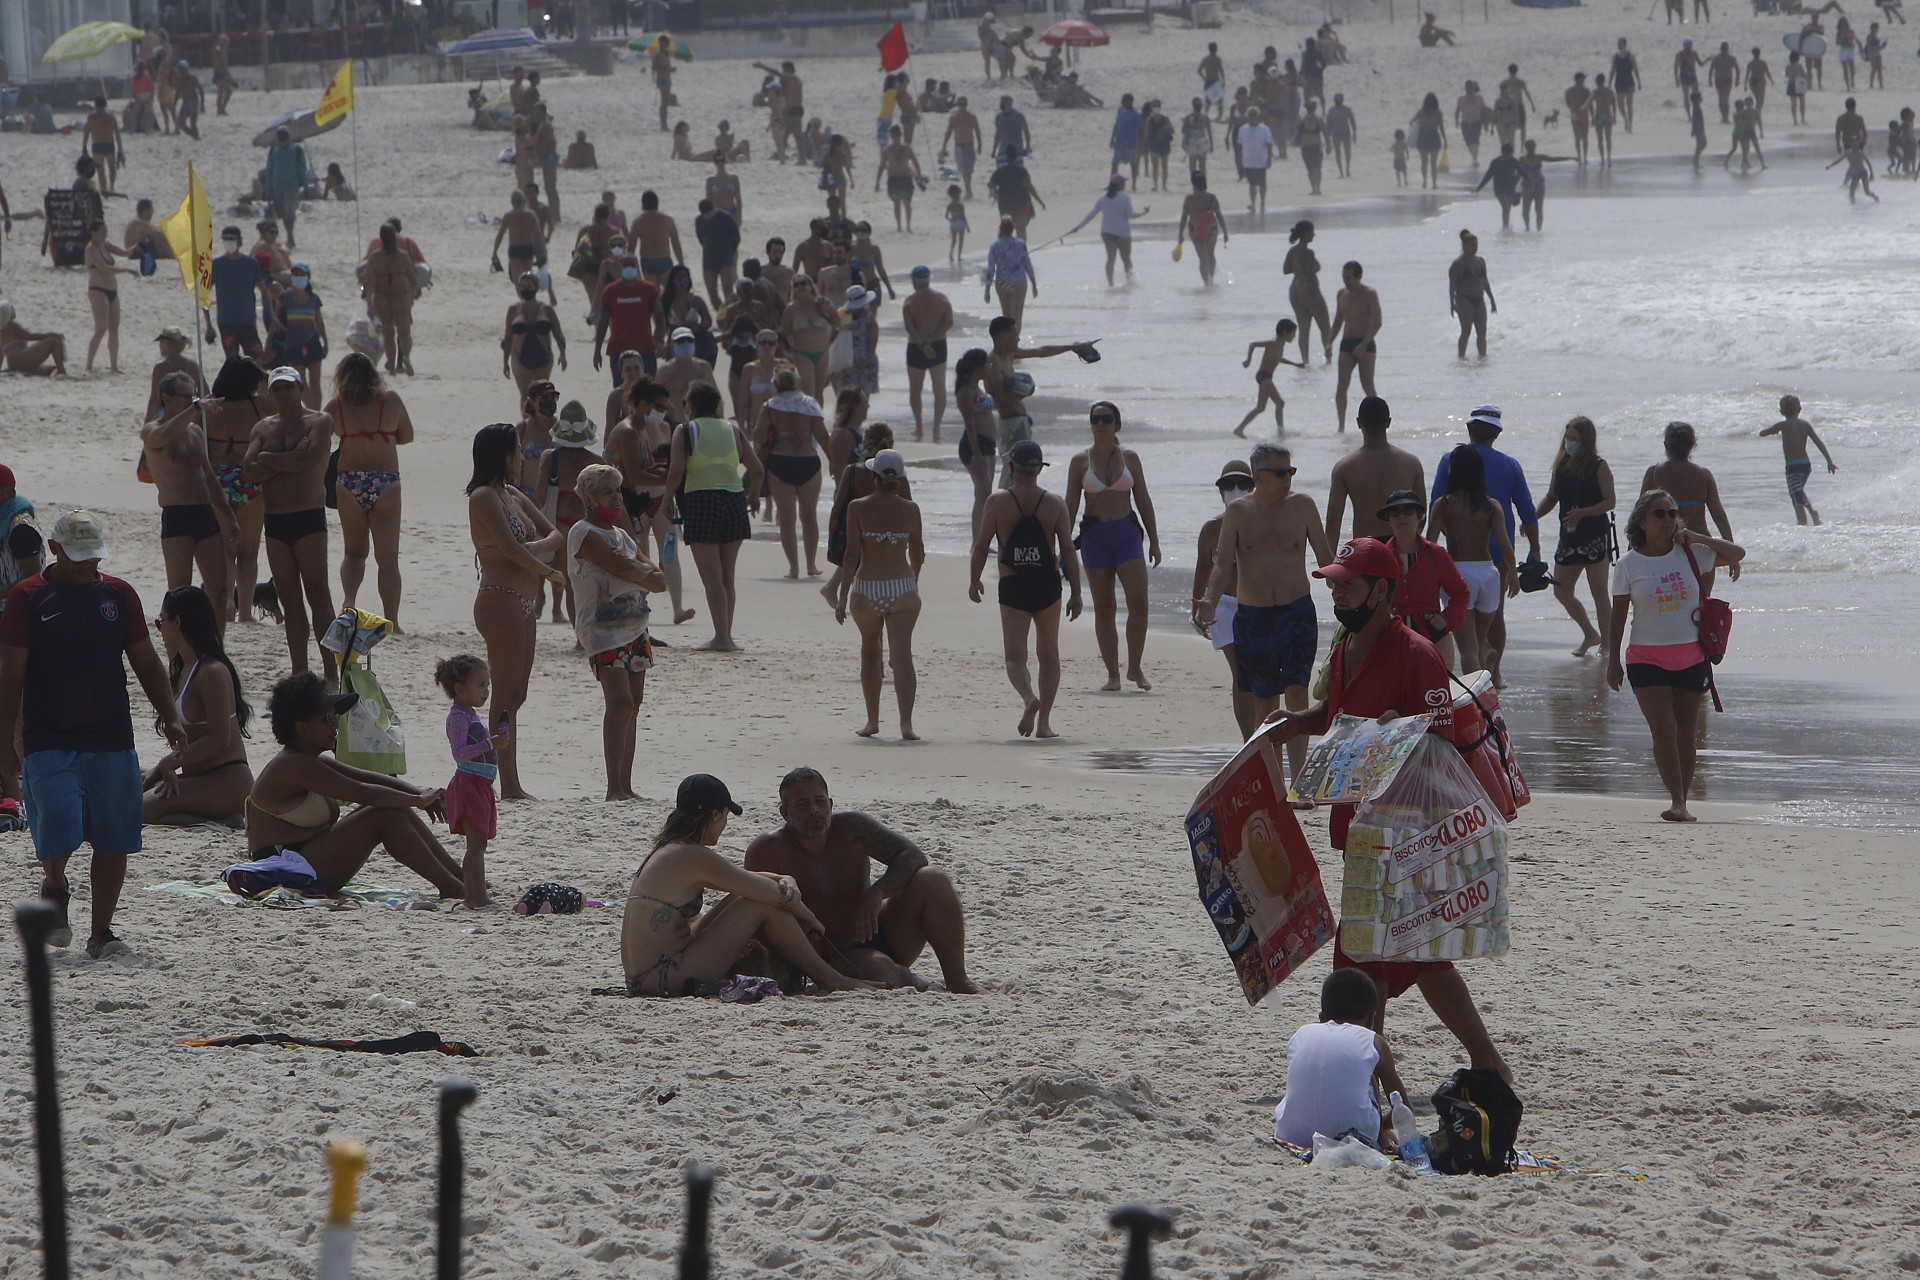 Movimentação na Praia de Copacabana nesta manhã de domingo - Reginaldo Pimenta / Agencia O Dia